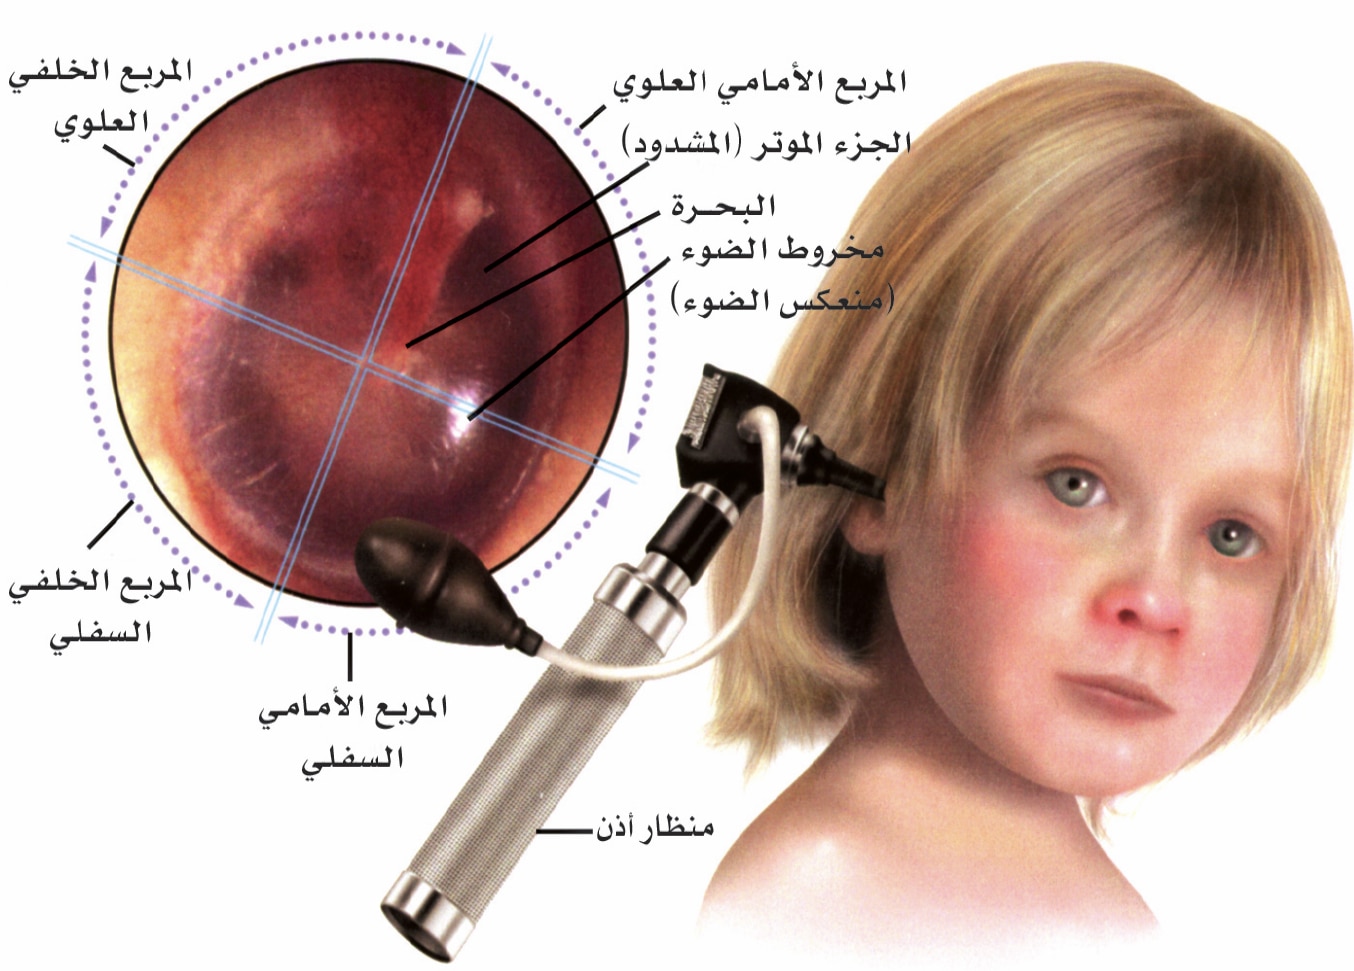 الاذن الاطفال التهاب عند علاج التهاب